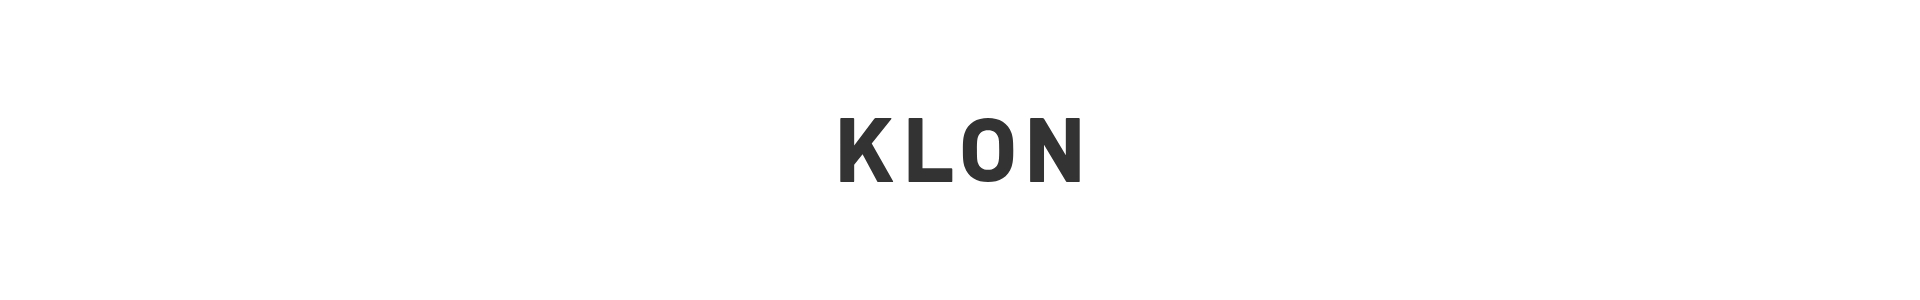 KLON TRICK 30sKLON TRICK 30s～デザイン制作事例1